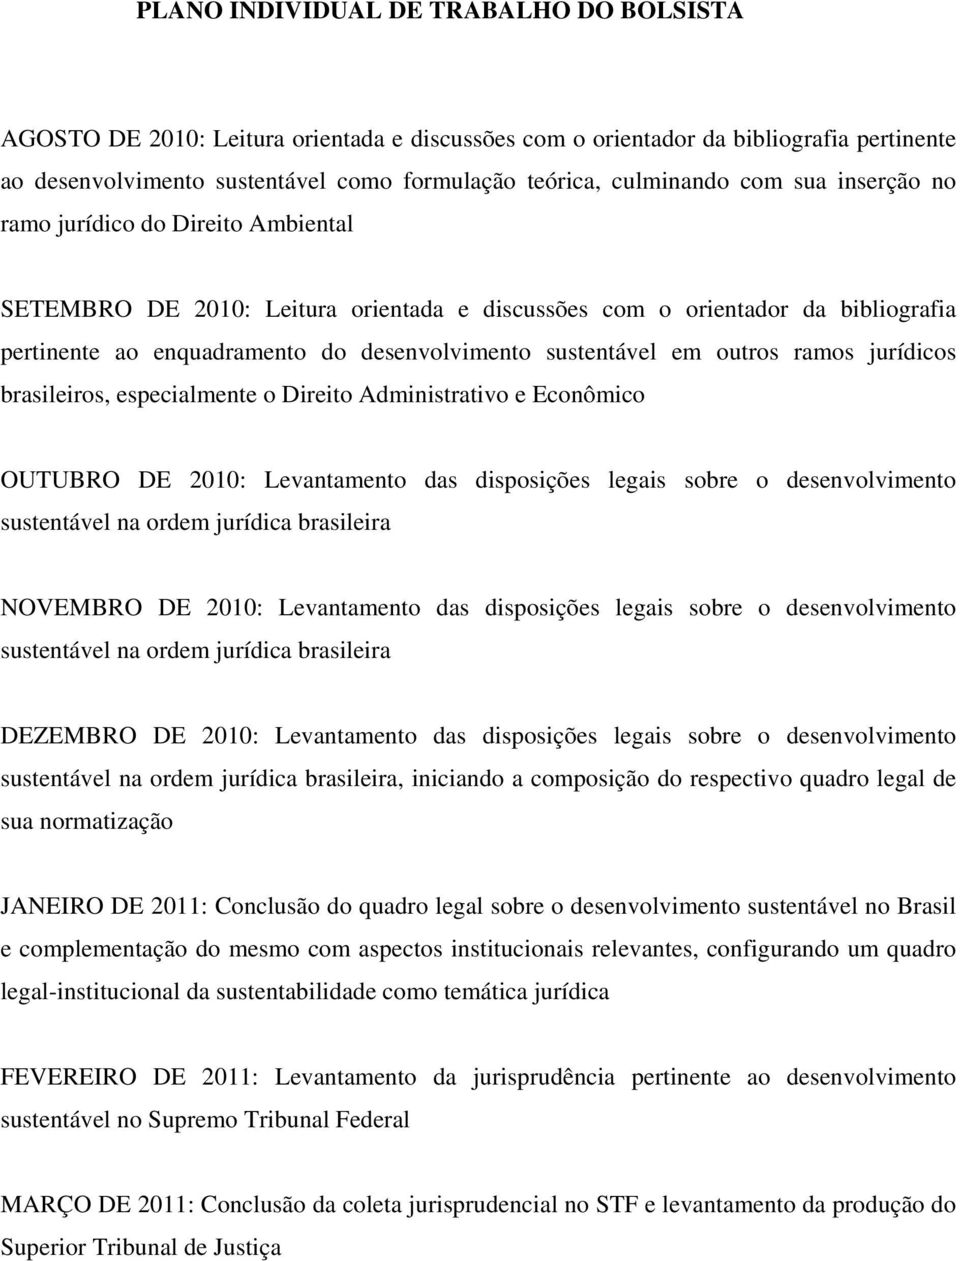 outros ramos jurídicos brasileiros, especialmente o Direito Administrativo e Econômico OUTUBRO DE 2010: Levantamento das disposições legais sobre o desenvolvimento sustentável na ordem jurídica